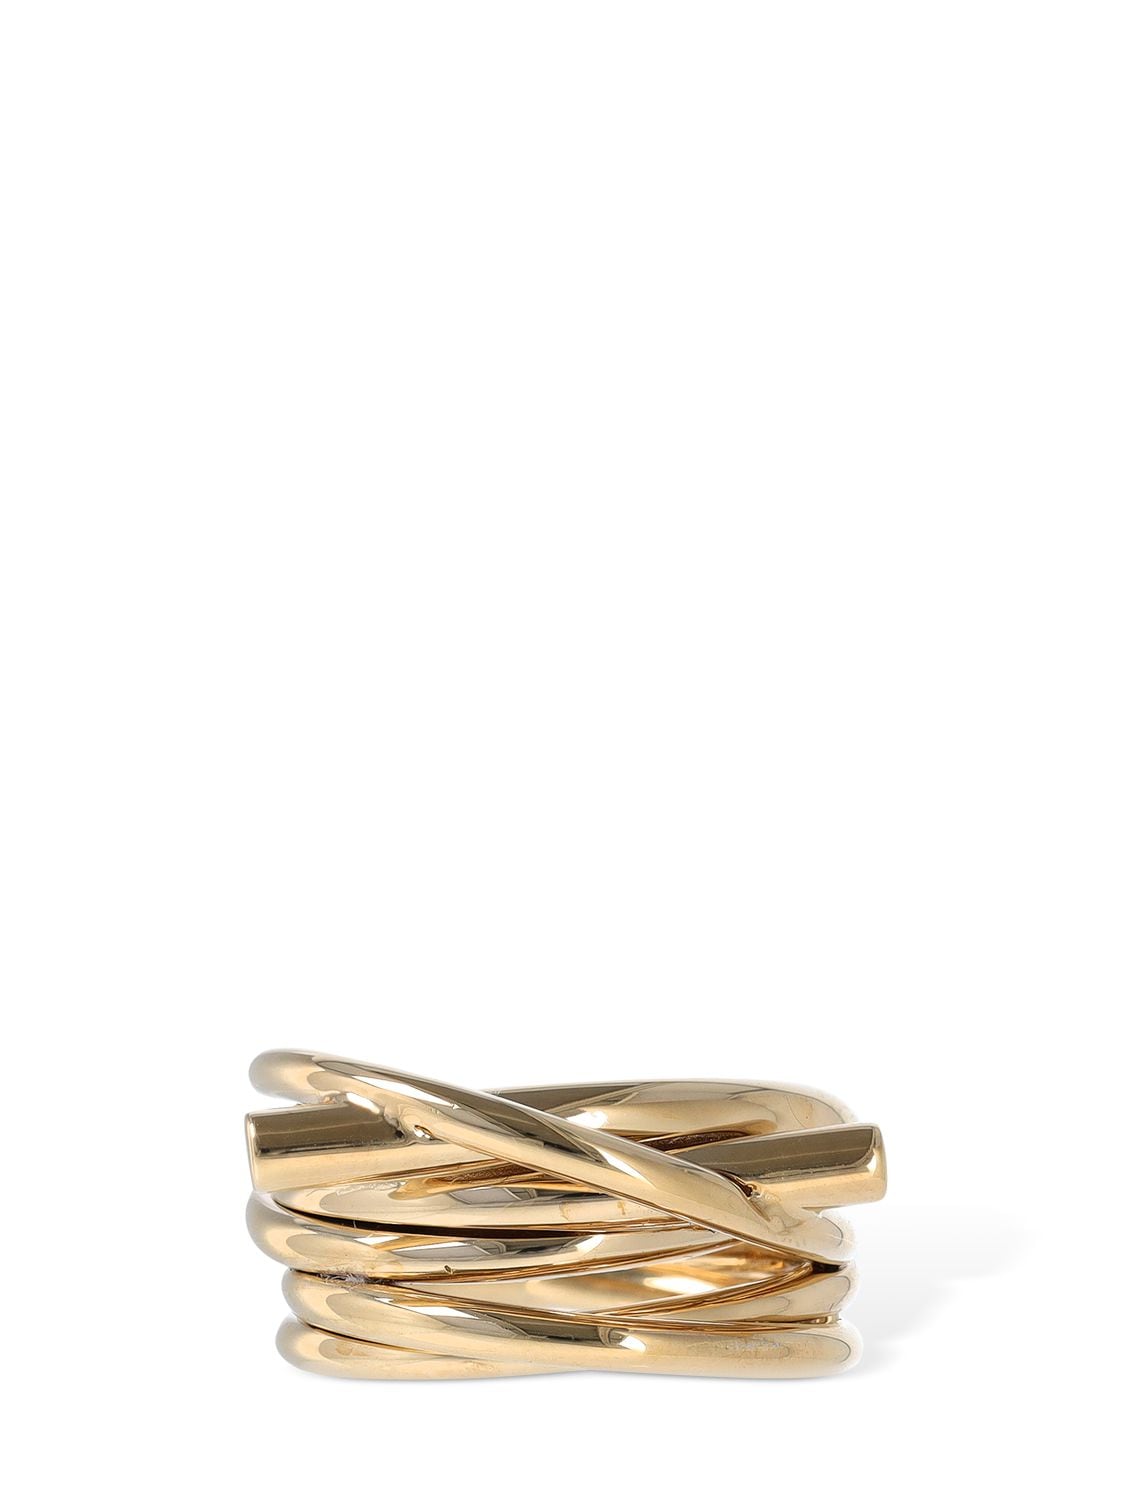 Salvatore Ferragamo Evo X Thick Ring In Gold | ModeSens